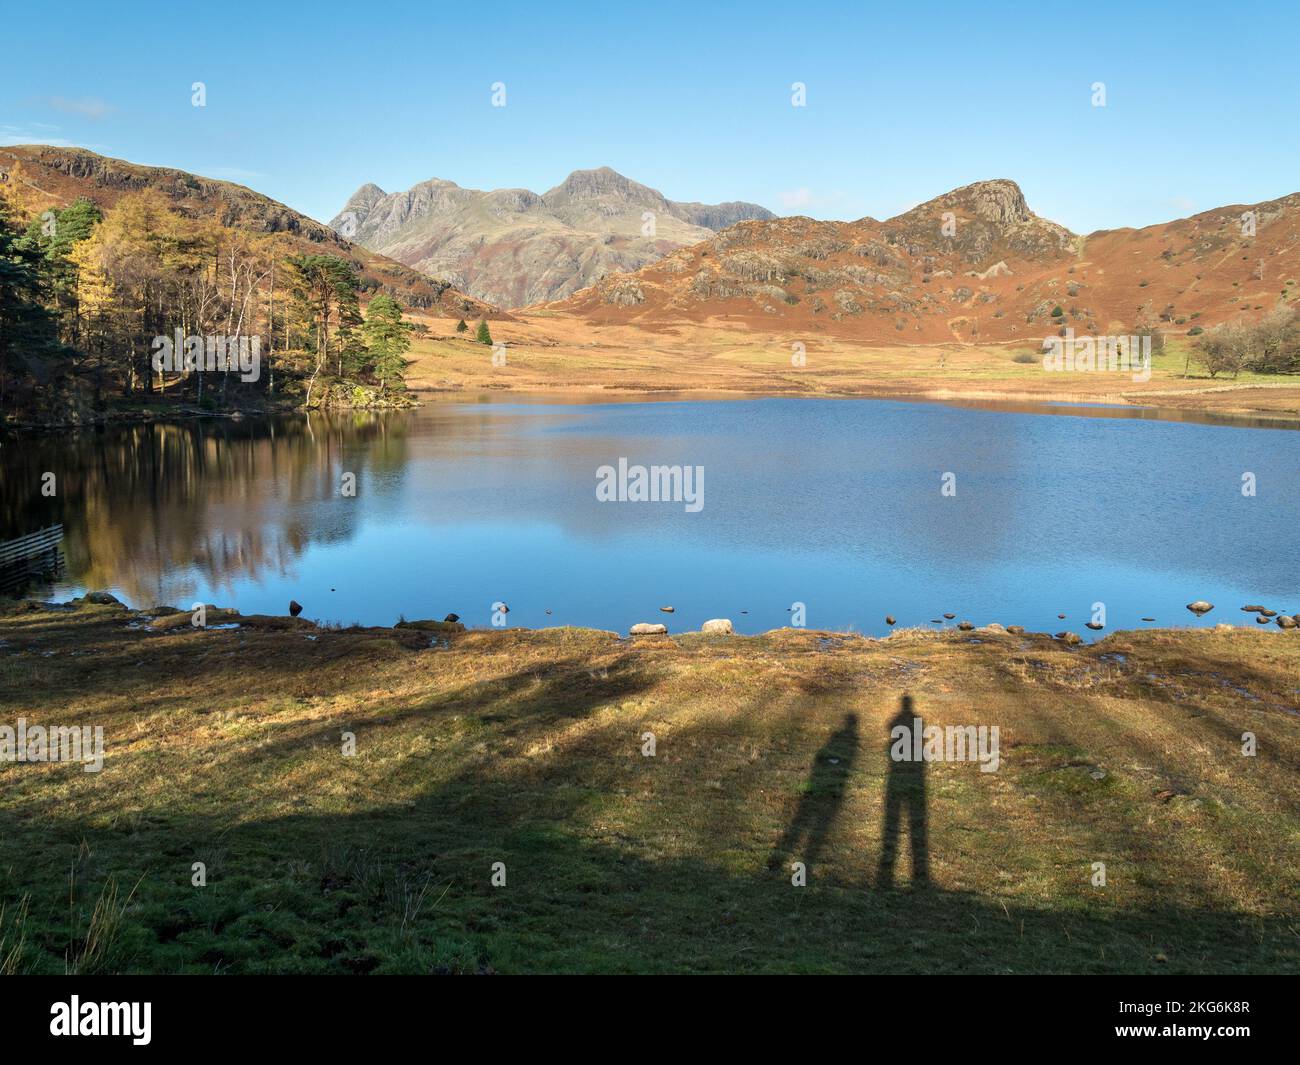 Deux personnes jettent de longues ombres vers Blea Tarn et les montagnes Langdale Pikes dans le district des lacs anglais en automne, Cumbria, Angleterre, Royaume-Uni Banque D'Images